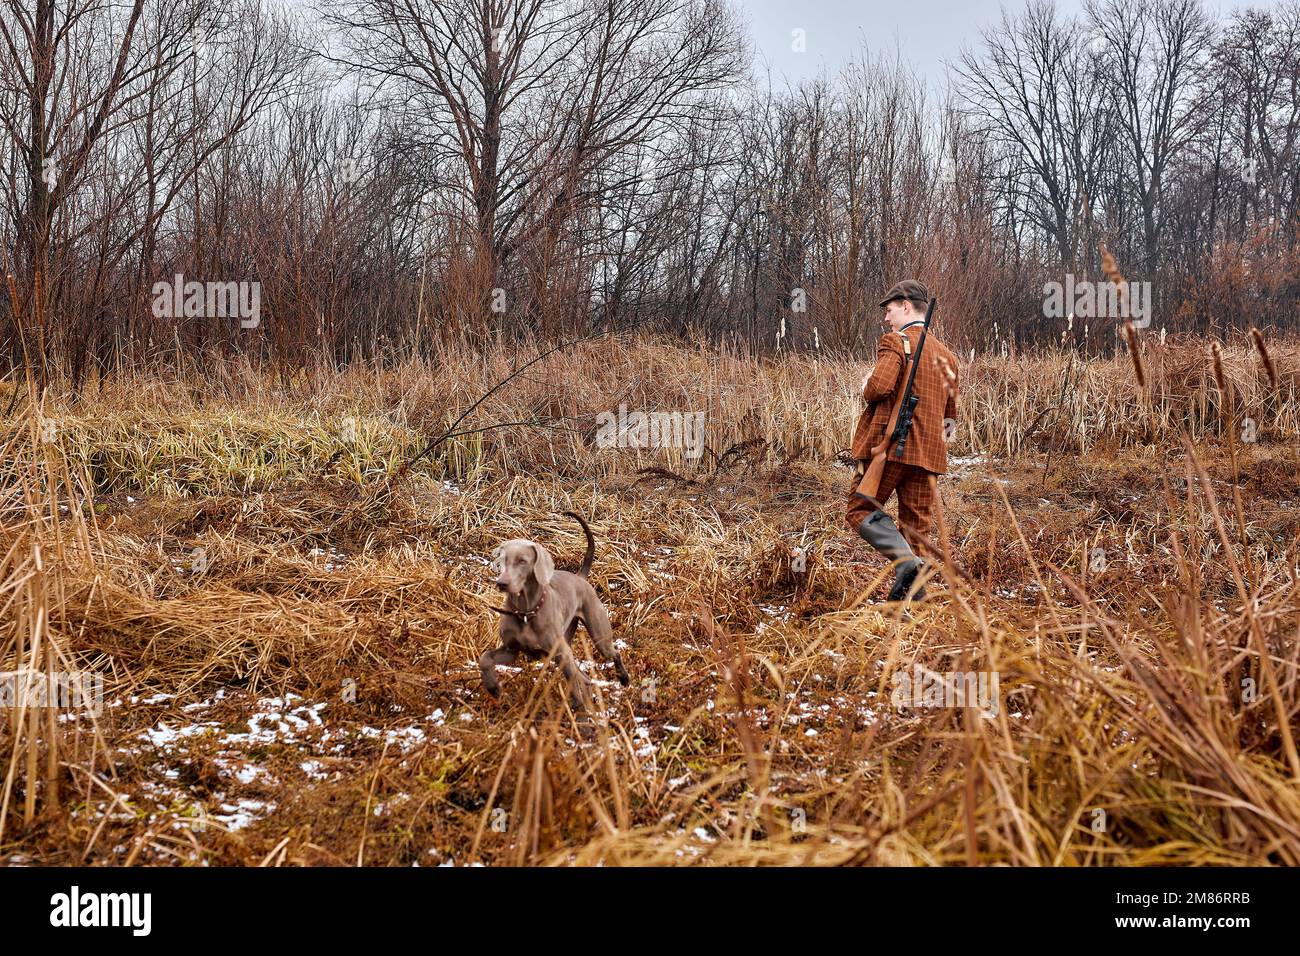 Aufmerksamer Weimaraner Hund läuft auf Herbstwiese mit Jäger Mann Besitzer wartet auf Signal oder Belohnung, auf dem Land. Aktive stark grauen Hund Jagd o Stockfoto